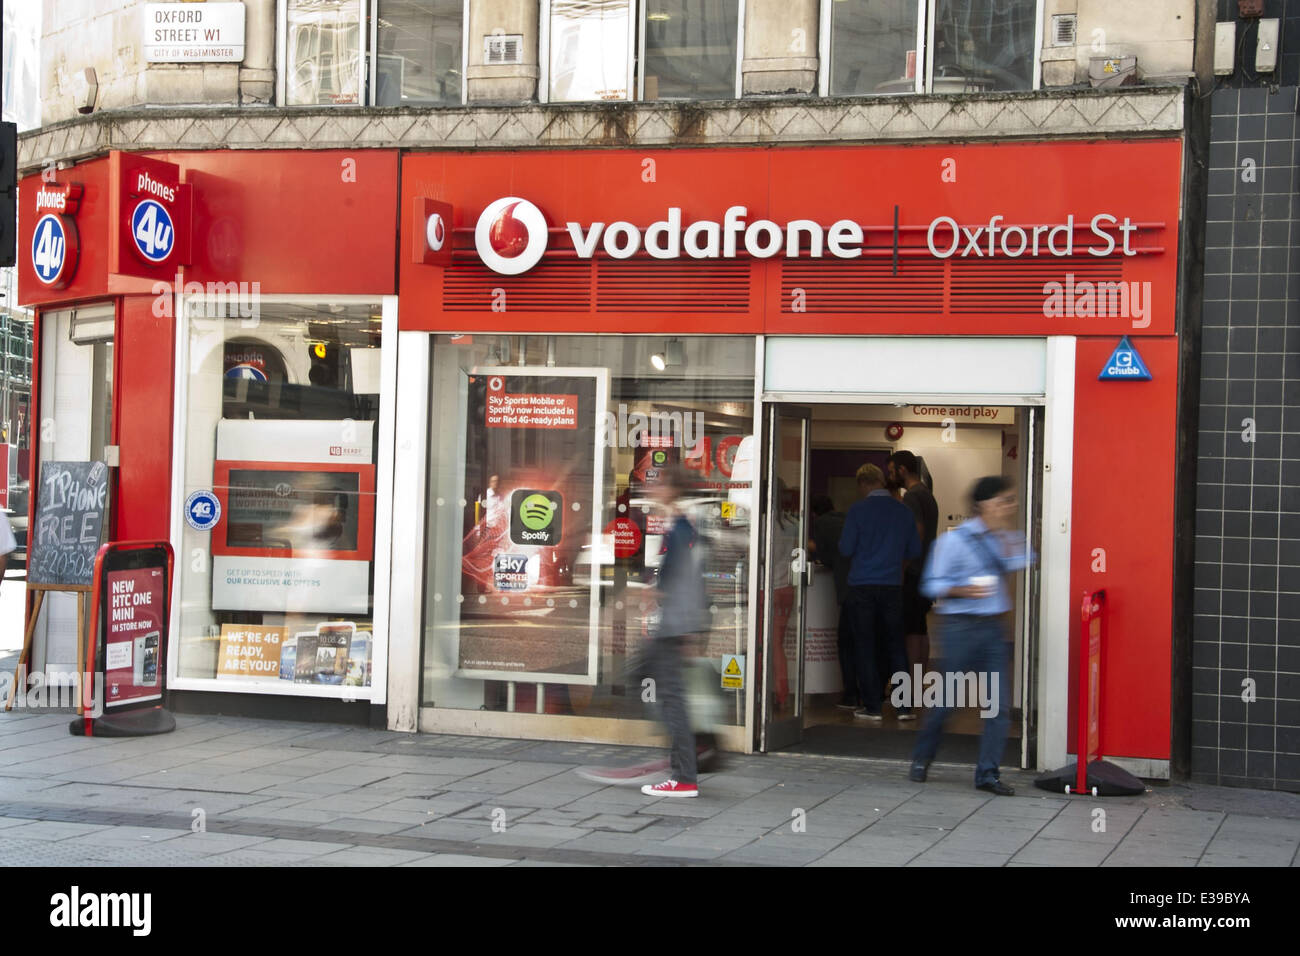 Der Vodafone Shop in der Oxford Street. Am 29. August startet Vodafone 4G Service für Kunden in London. Das Unternehmen investierte £ 900 Millionen im Netz. Vodafone will roll-out der Service für 12 weitere Städte einschließlich Sheffield, Leeds und Manchester vor Ende 2013. Kunden auf einer SIM-Karte nur 12-Monats-Vertrag werden voraussichtlich £26 pro Monat, £5 mehr als die durchschnittliche 3G-Dienst zu zahlen.  Mitwirkende: Vodafone shop wo: London, UK, Vereinigtes Königreich bei: 28. August 2013 Stockfoto